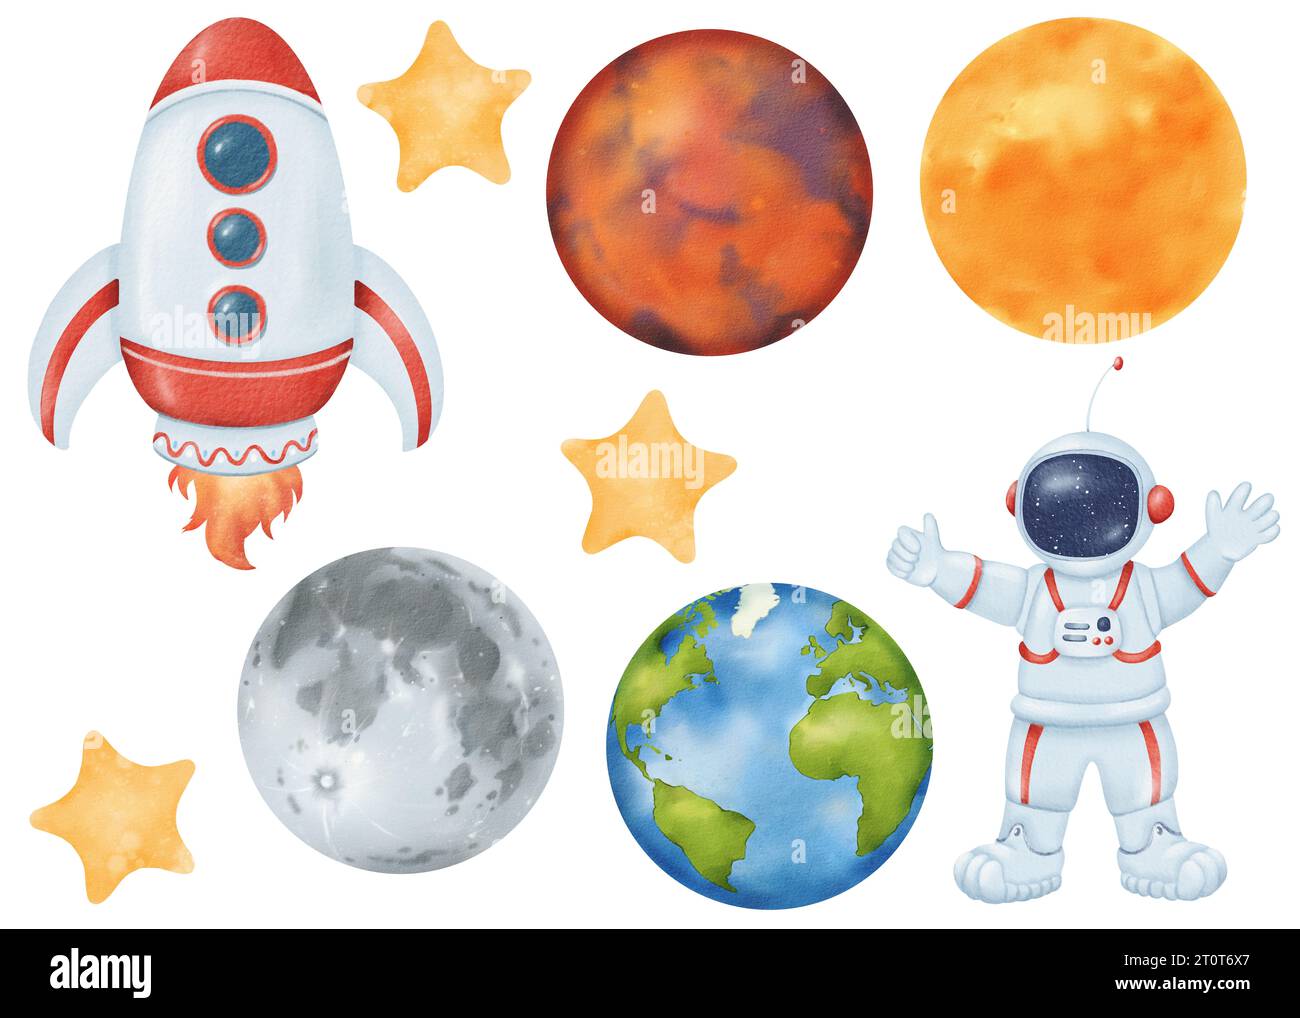 COSMOS-Set. Rakete mit Flamme. Fröhlicher Astronaut. Person in einem Raumanzug. Sterne Erde, Mond, Mars, Sonne. Isolierte Objekte mit Wasserfarbe. Zeichentrickstil Stockfoto